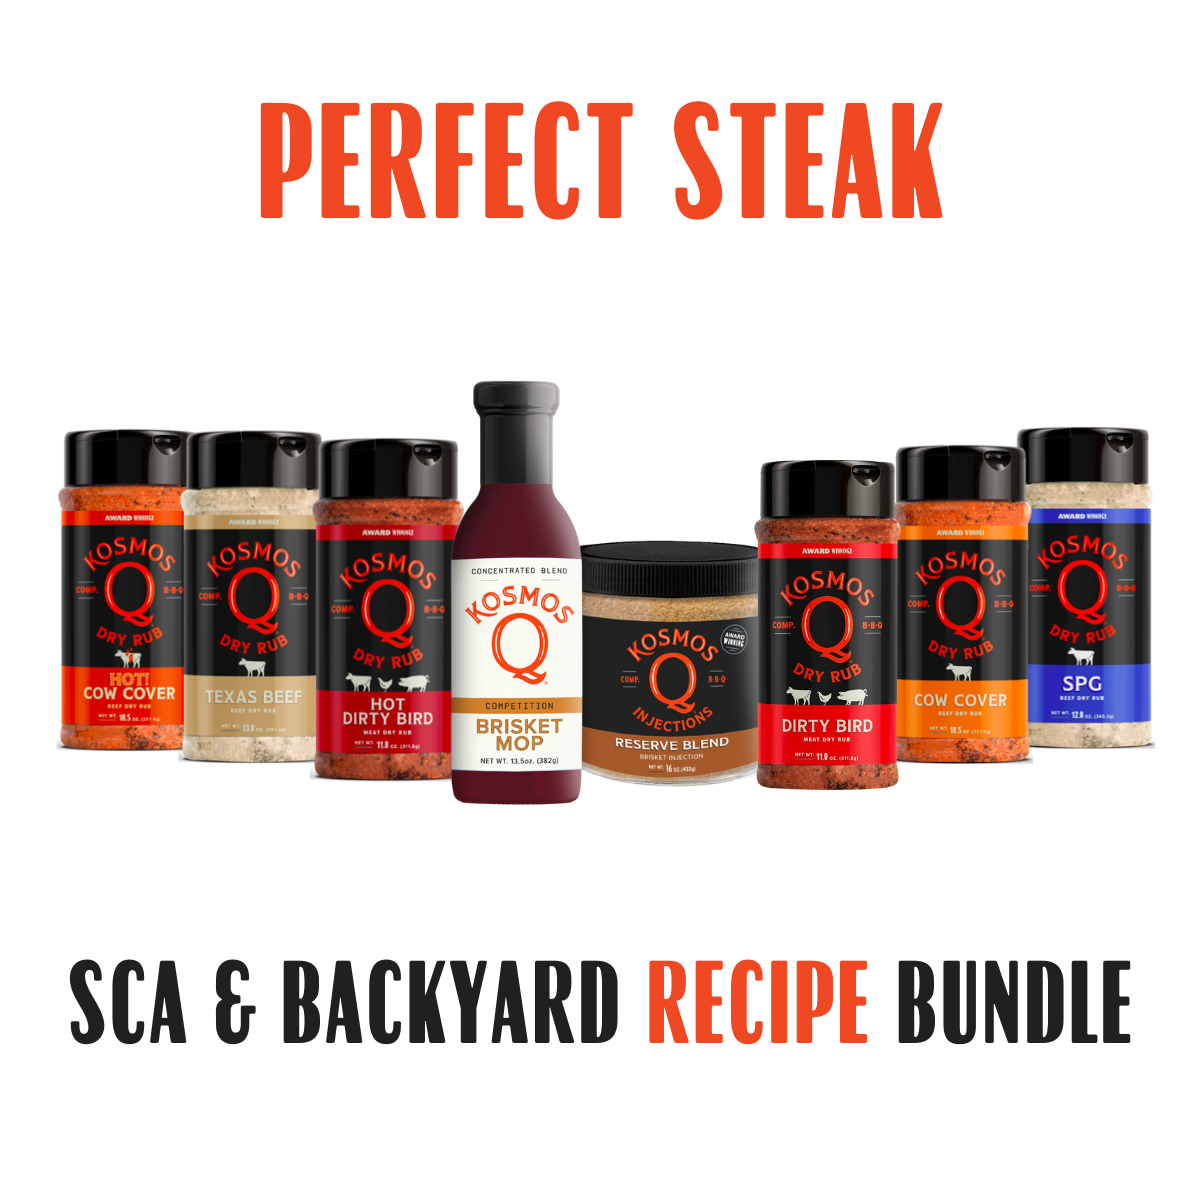 Kosmo's Q Recipe Bundles Perfect Steak SCA & Backyard Bundle